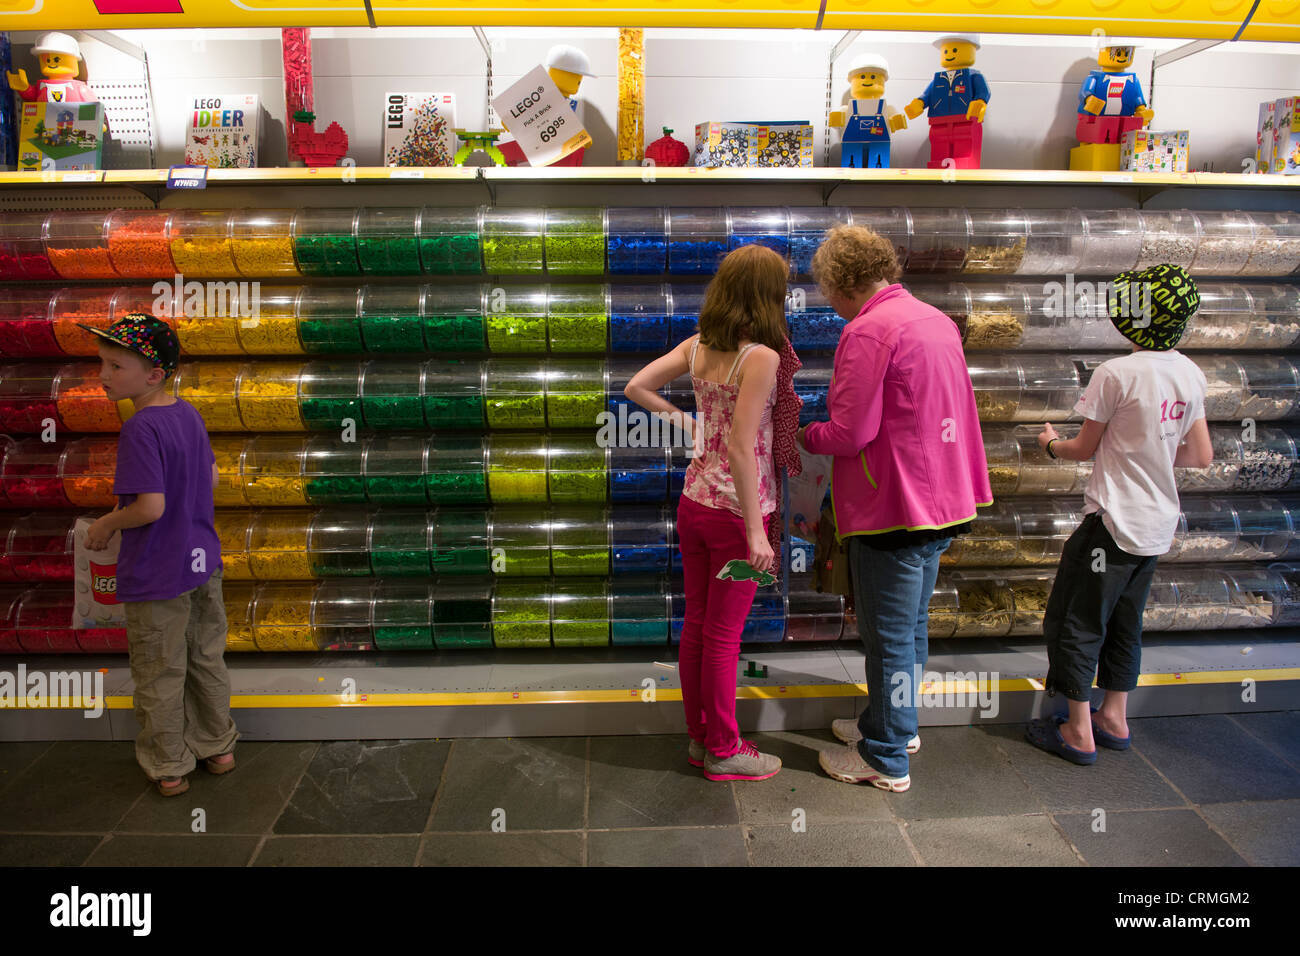 Les touristes à la recherche de morceaux de Lego traditionnels à l'intérieur de la boutique Lego, Legoland, BILLUND, Danemark Banque D'Images